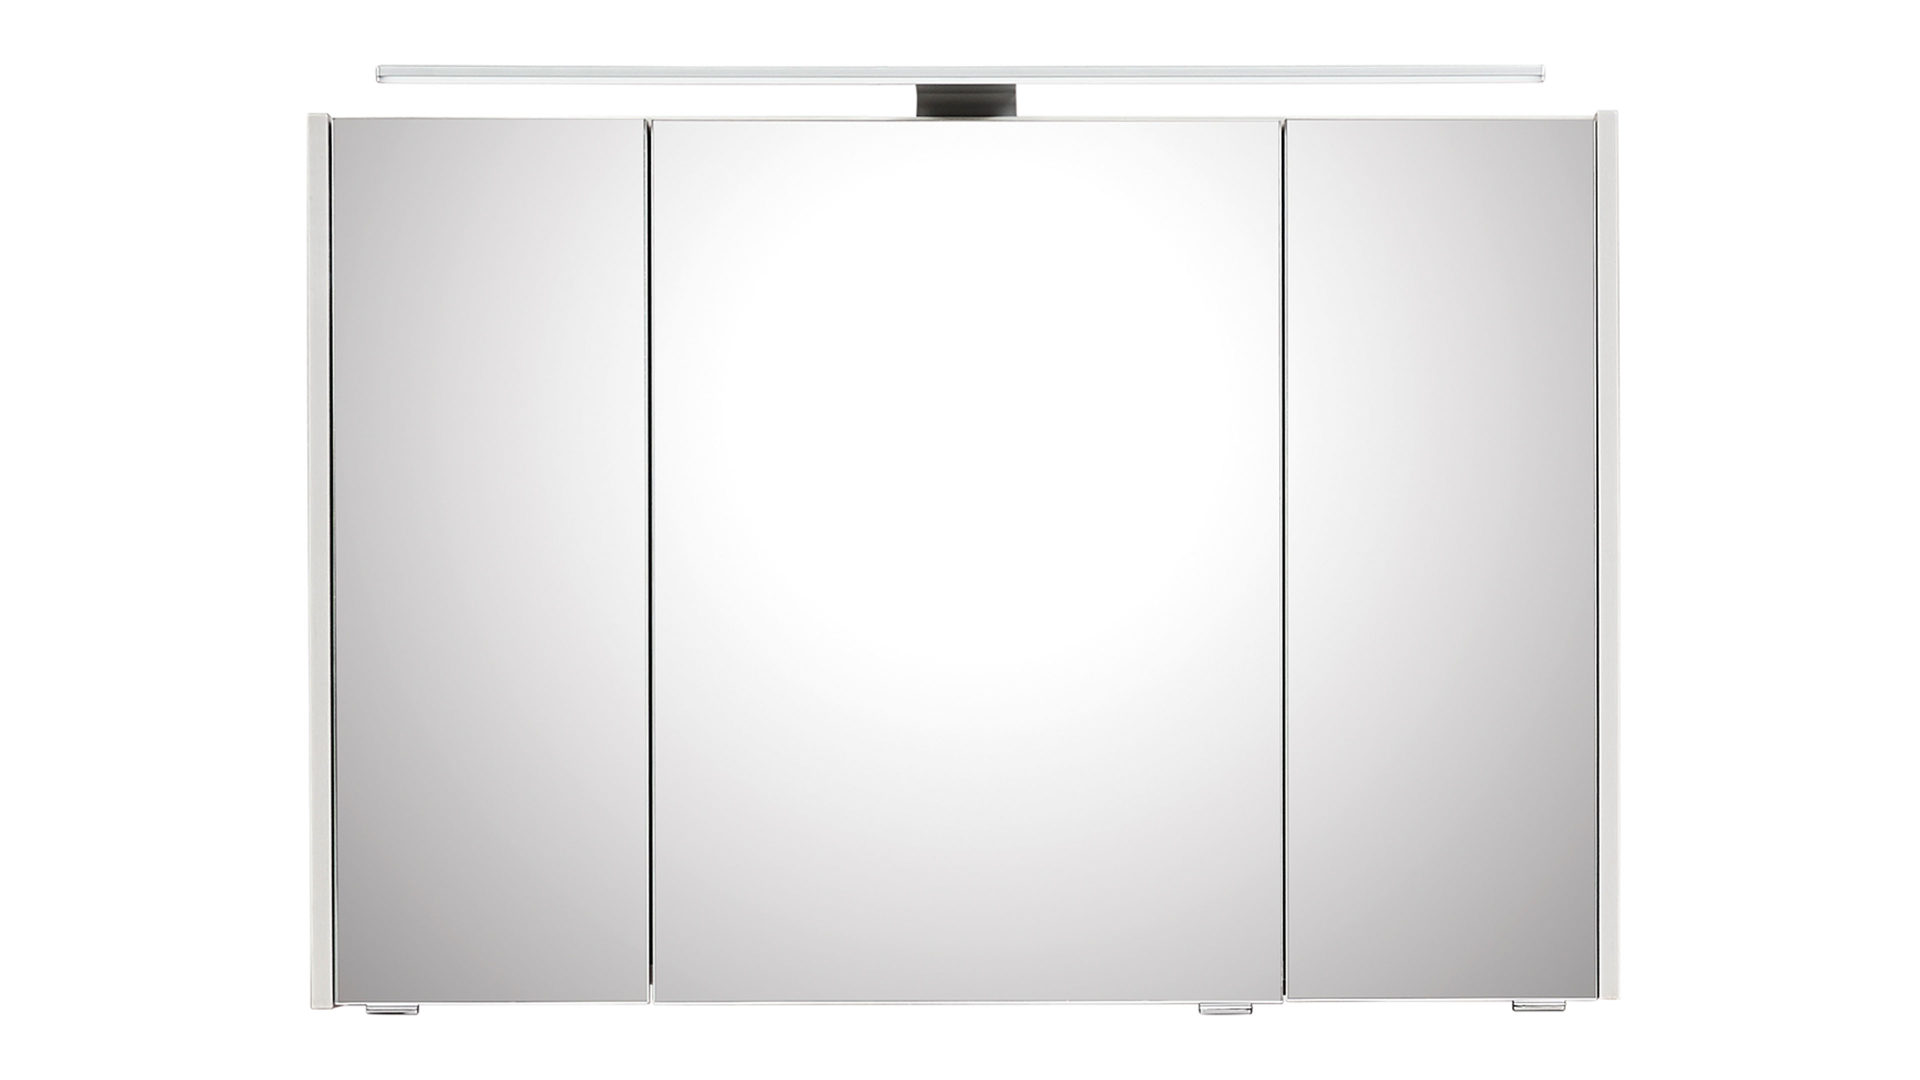 Spiegelschrank Pelipal aus Spiegel in Weiß pelipal Spiegelschrank Serie 6040 weiße eichefarbene Kunststoffoberflächen – drei Türen